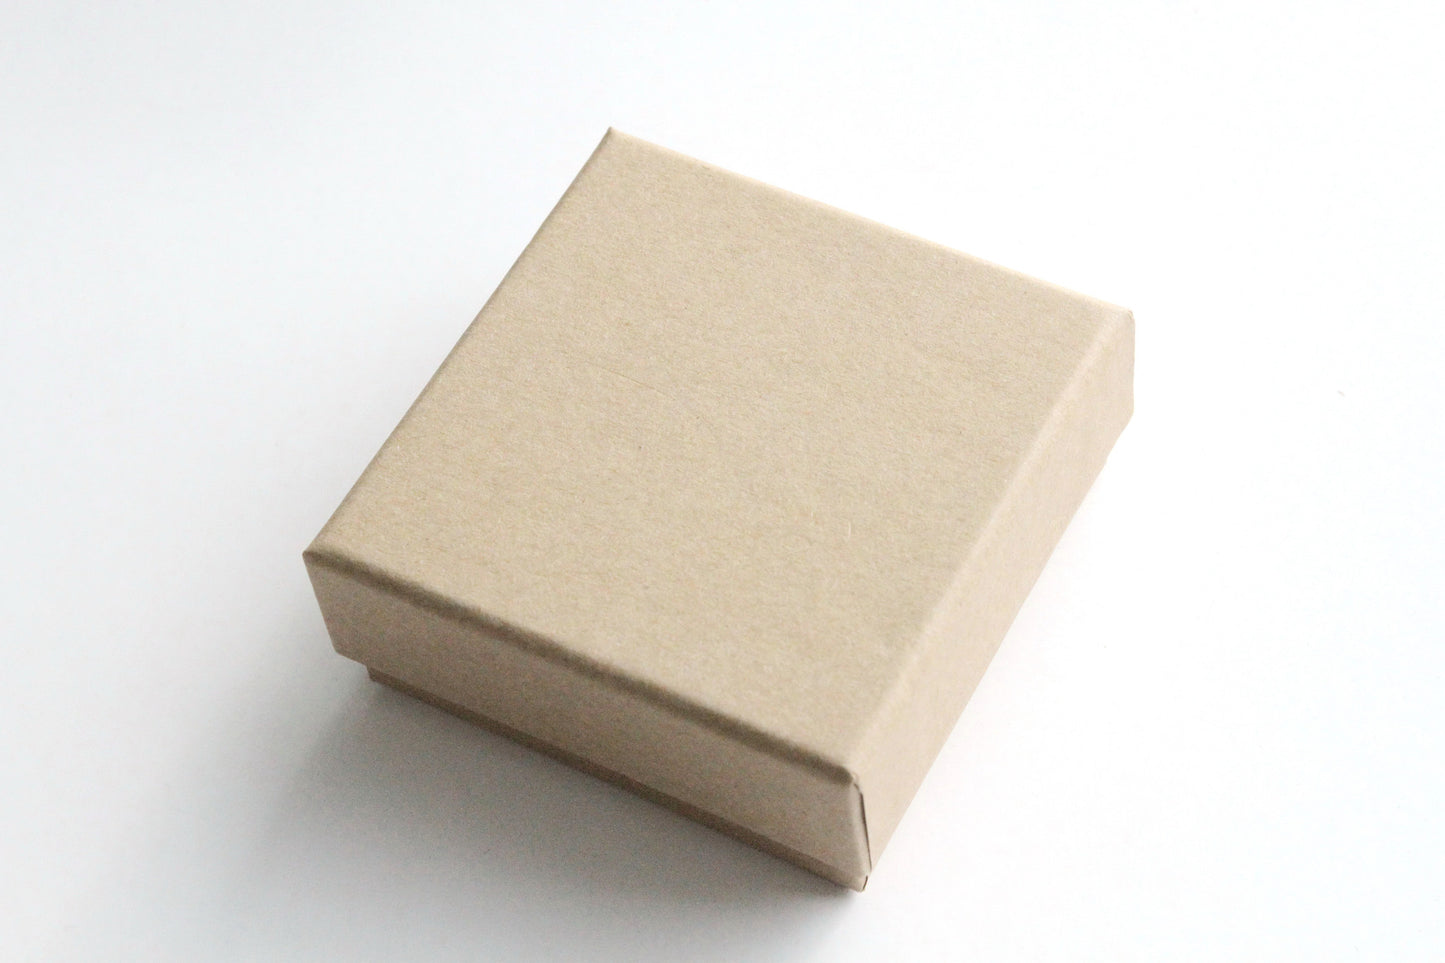 Kraft Box - Base and Lid, 7.3cm x 7.3cm x 3cm - KEY Handmade
 - 1